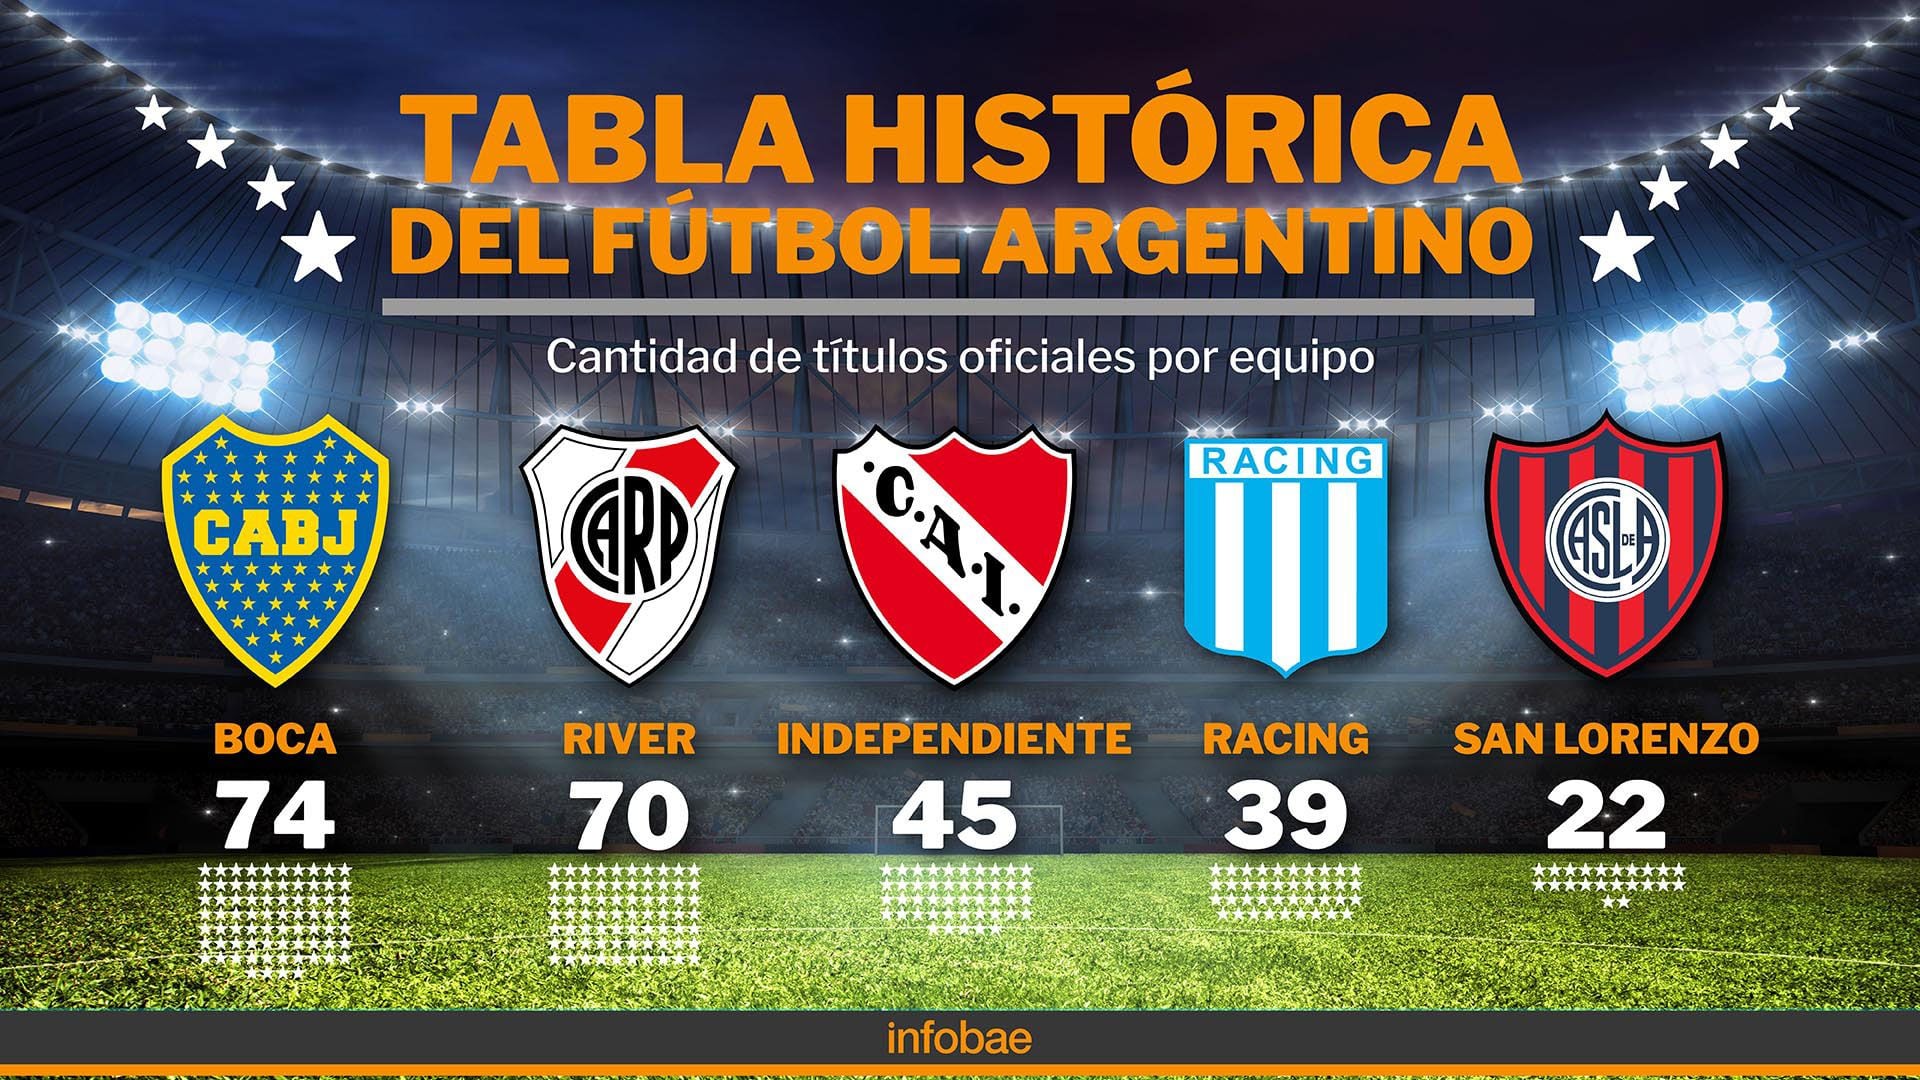 Tablas históricas del fútbol argentino